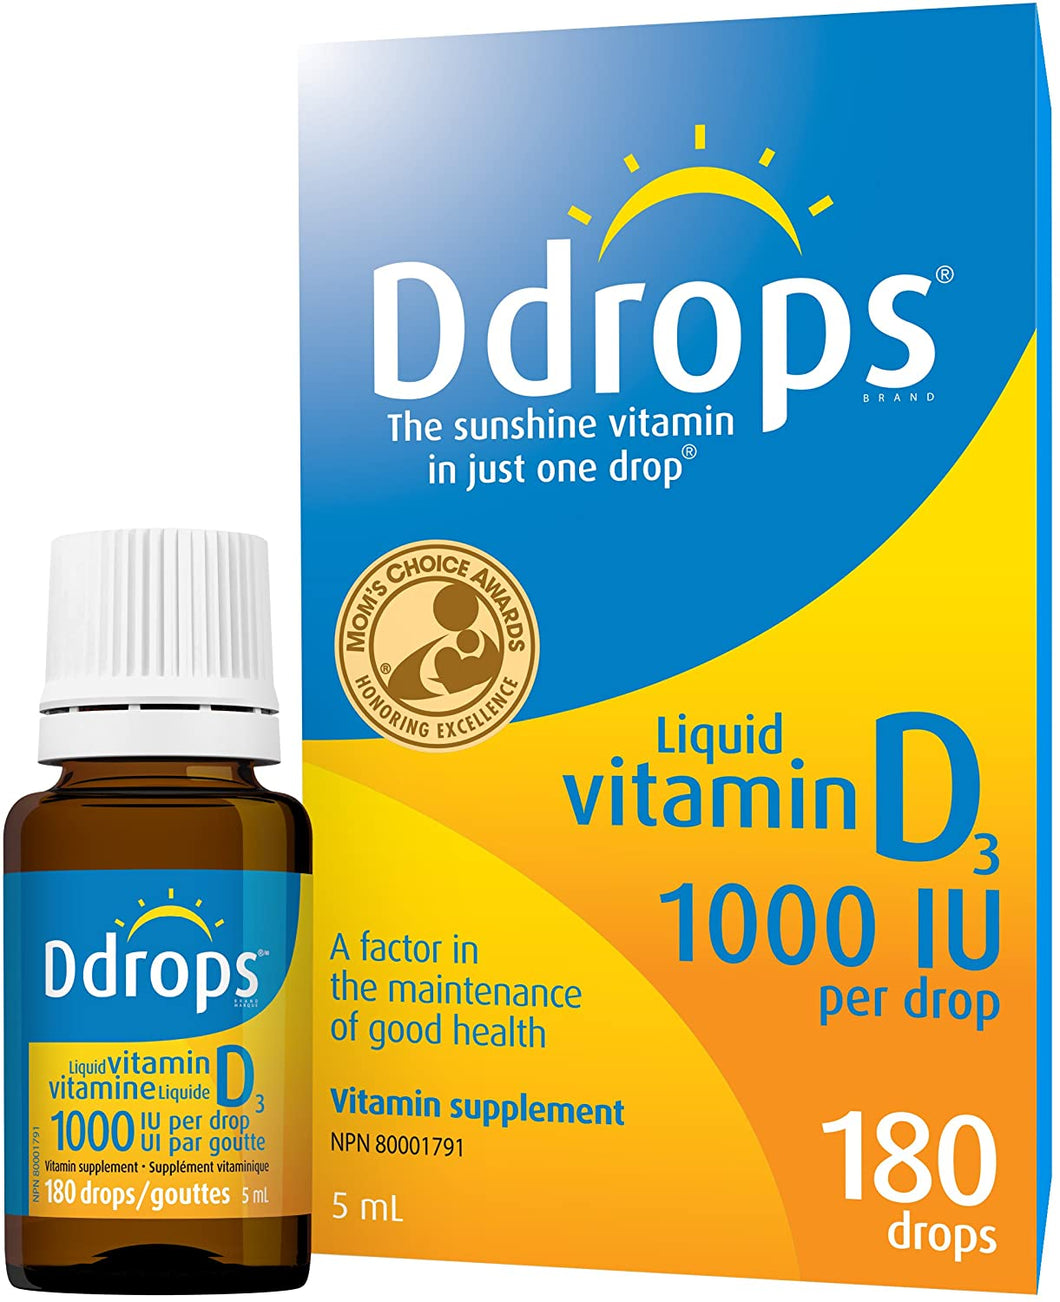 Ddrops: 1000 IU Vitamin D Drops